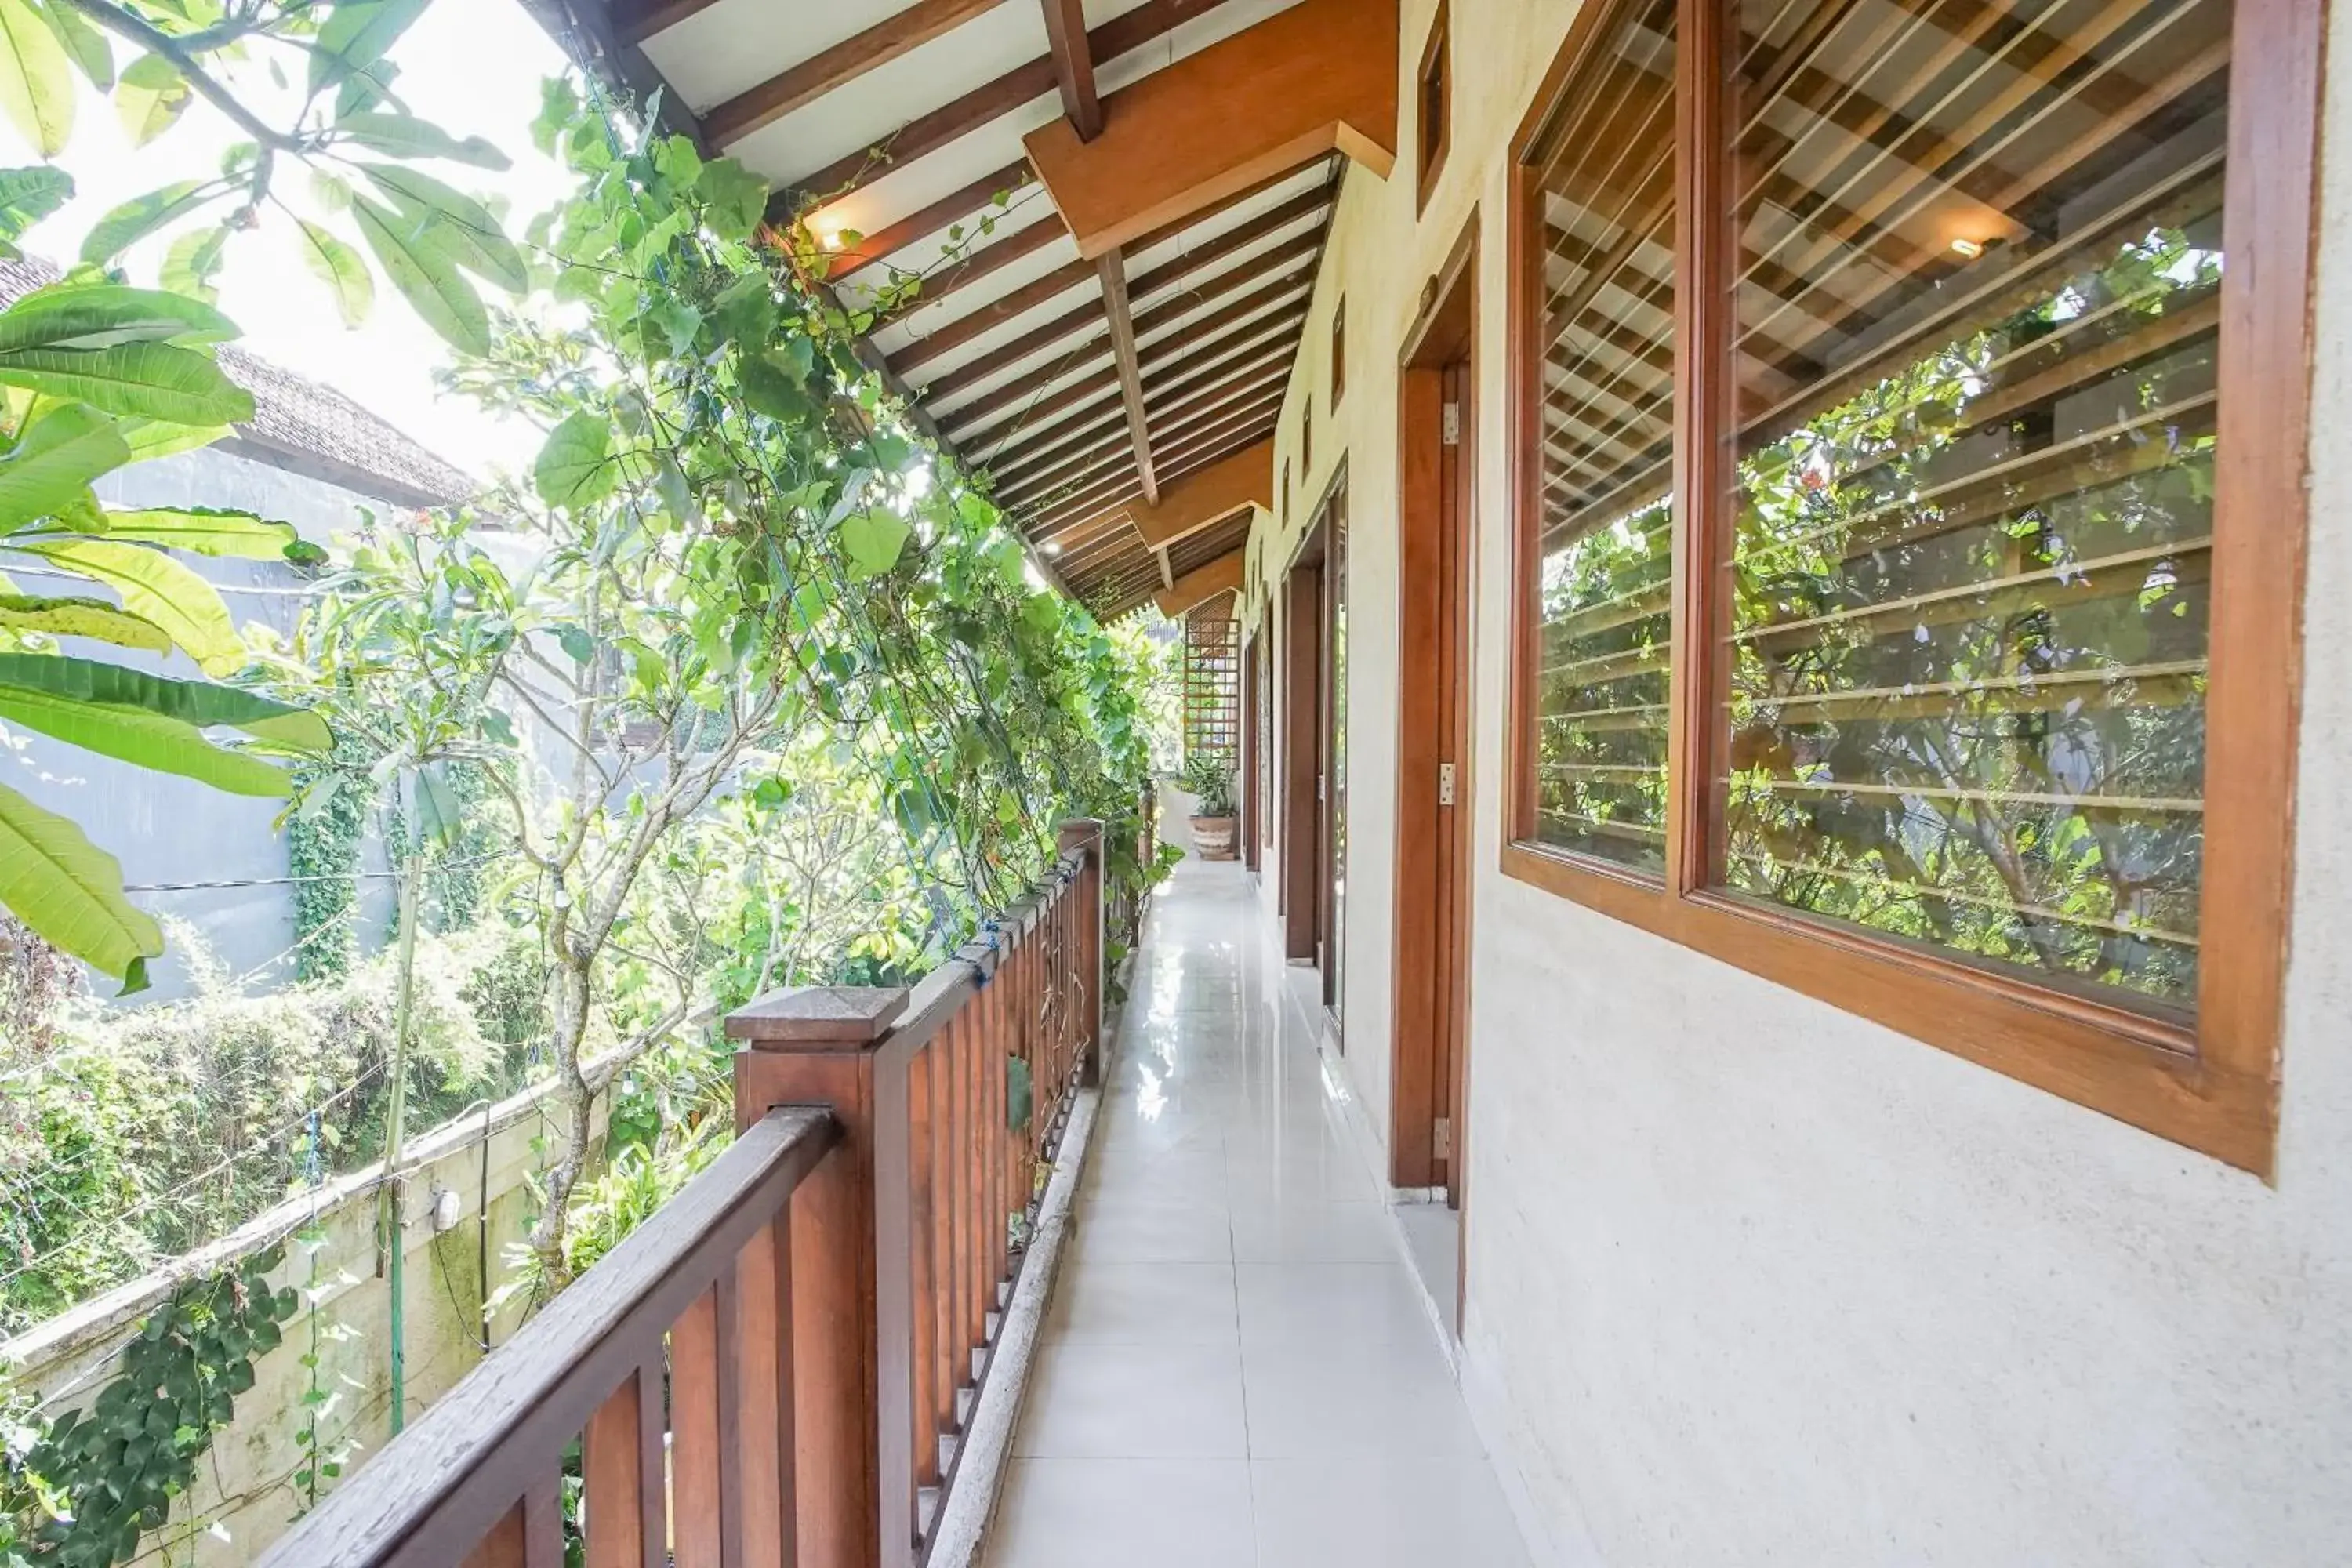 Balcony/Terrace in Villa Puriartha Ubud - CHSE Certified